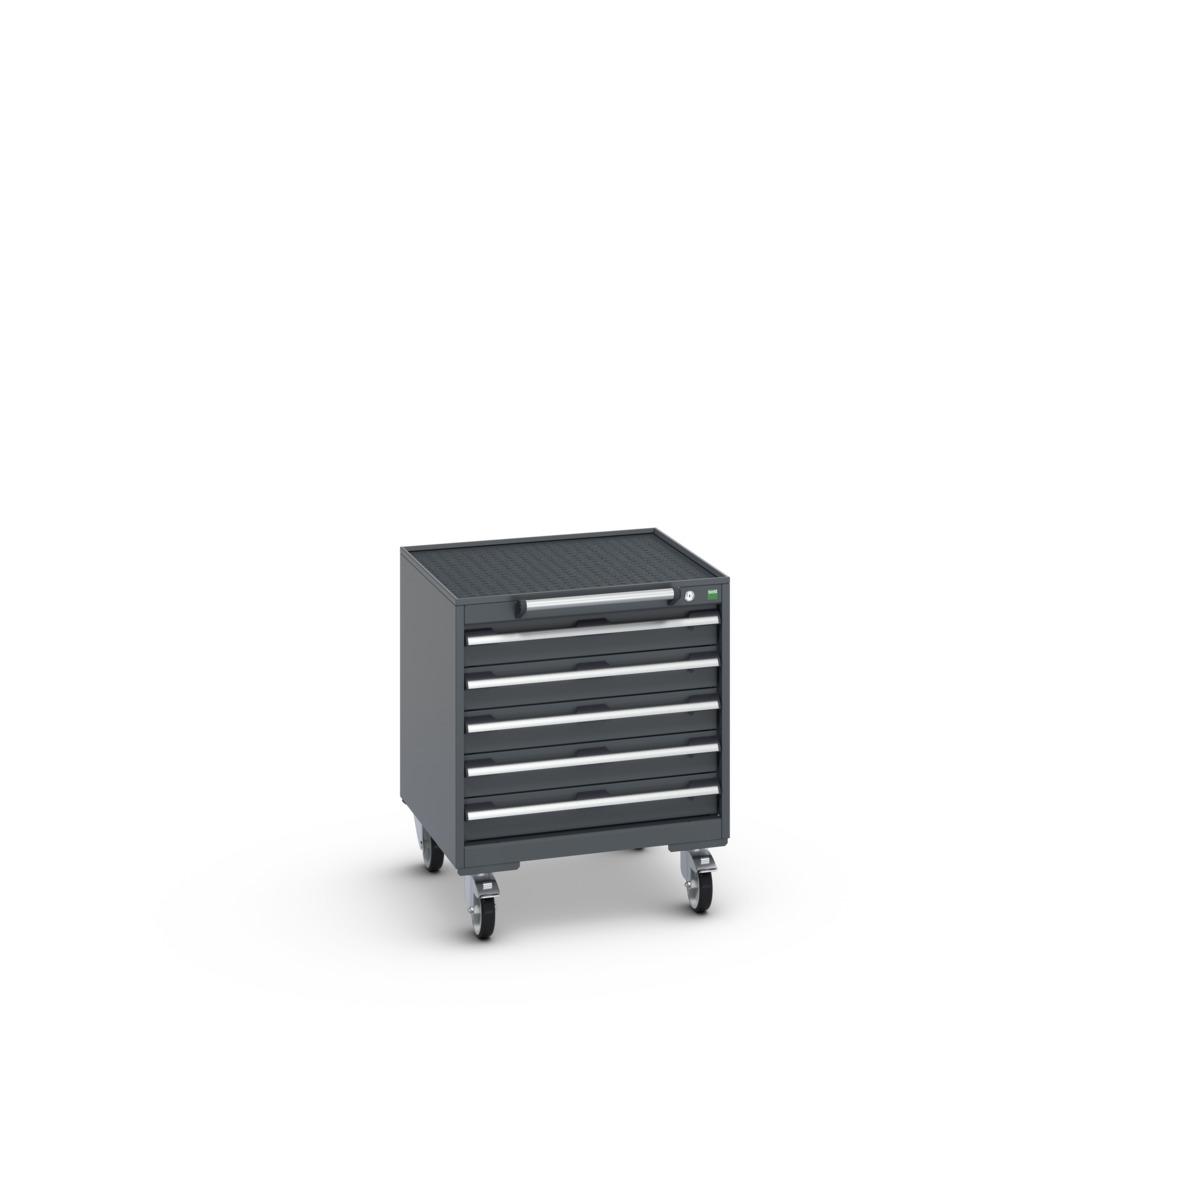 40402027.77V - cubio mobile cabinet